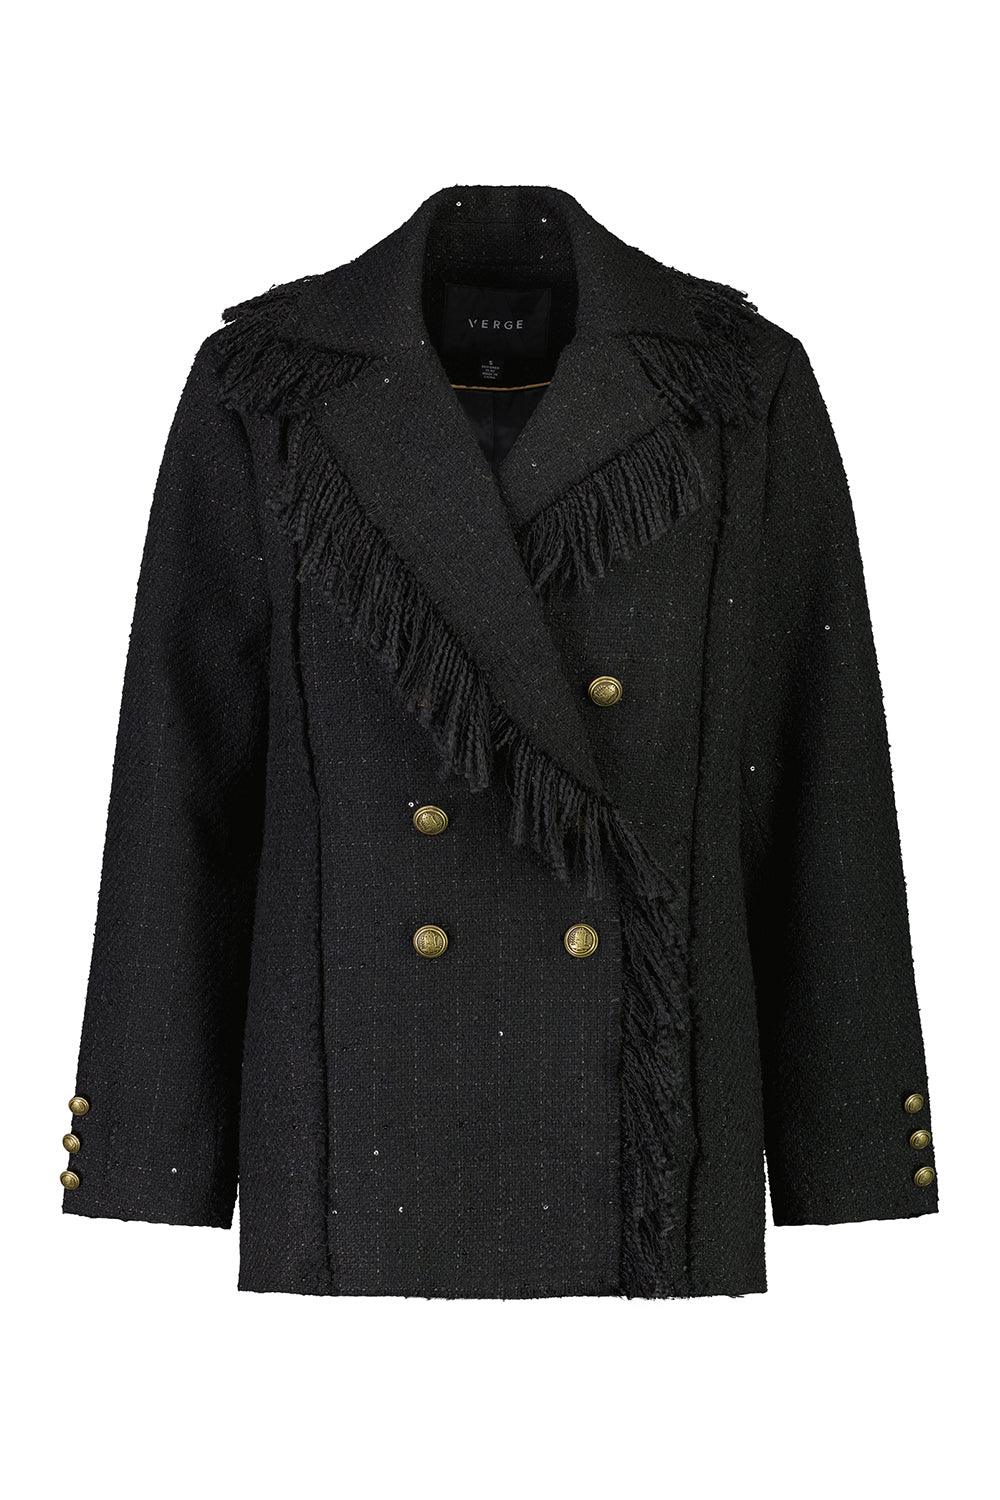 Iconic Coat - Black - Coat VERGE